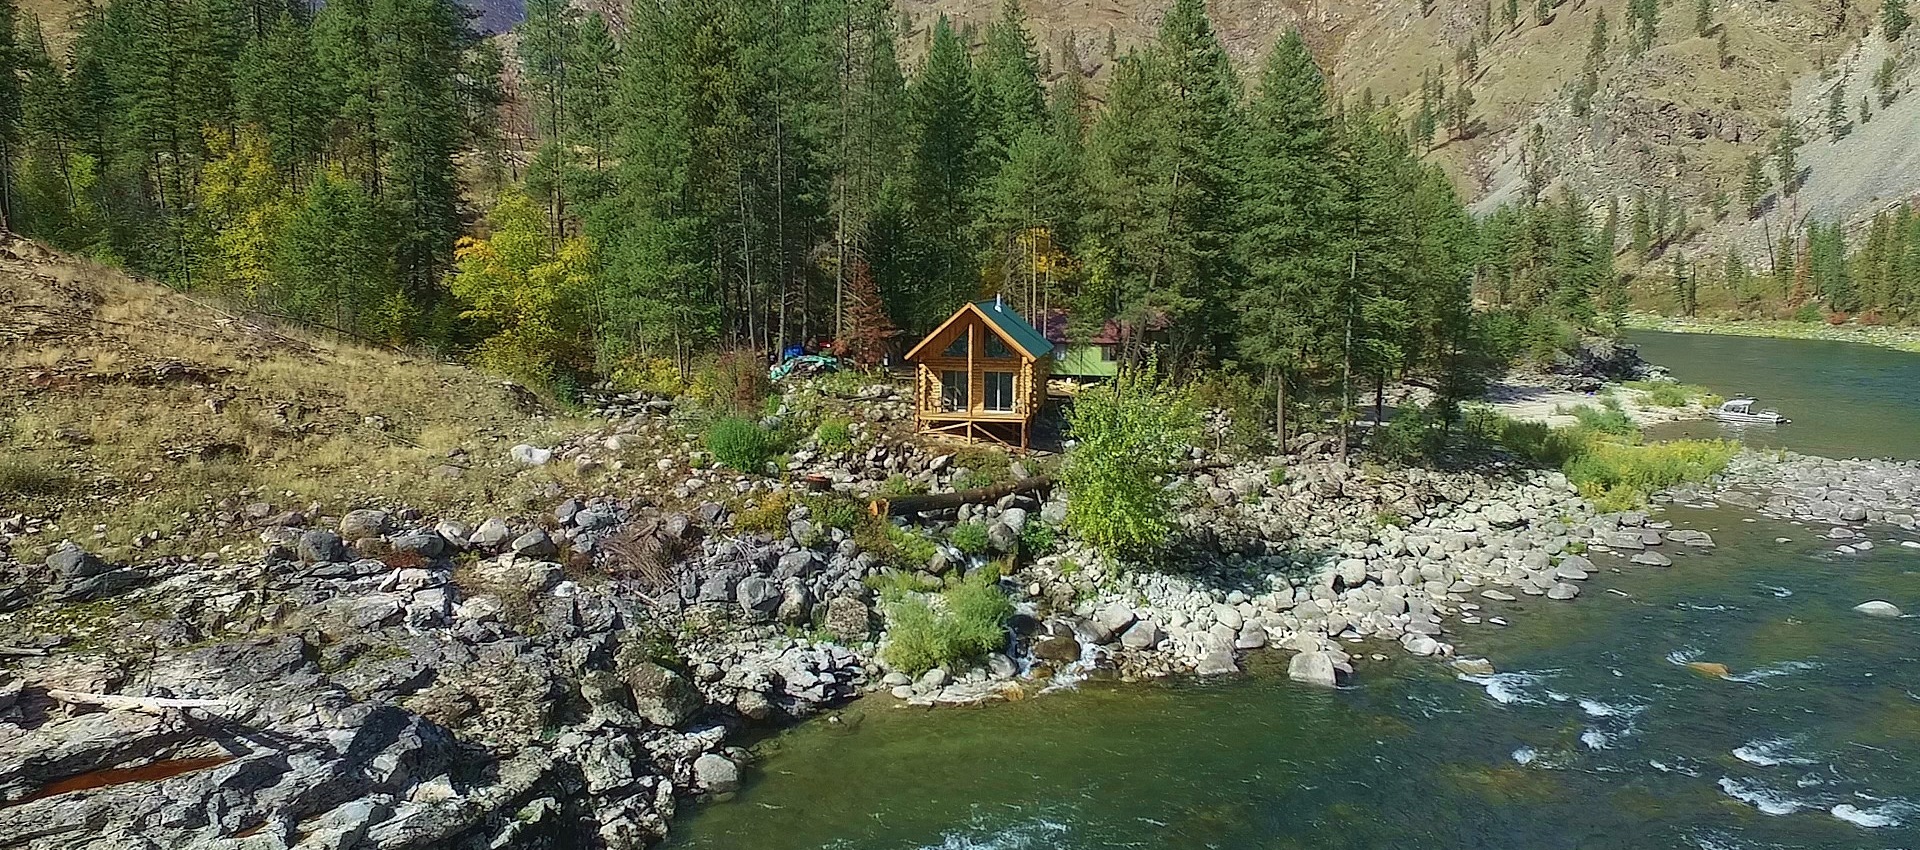 China Bar Lodge Idaho backcountry lodging vacation